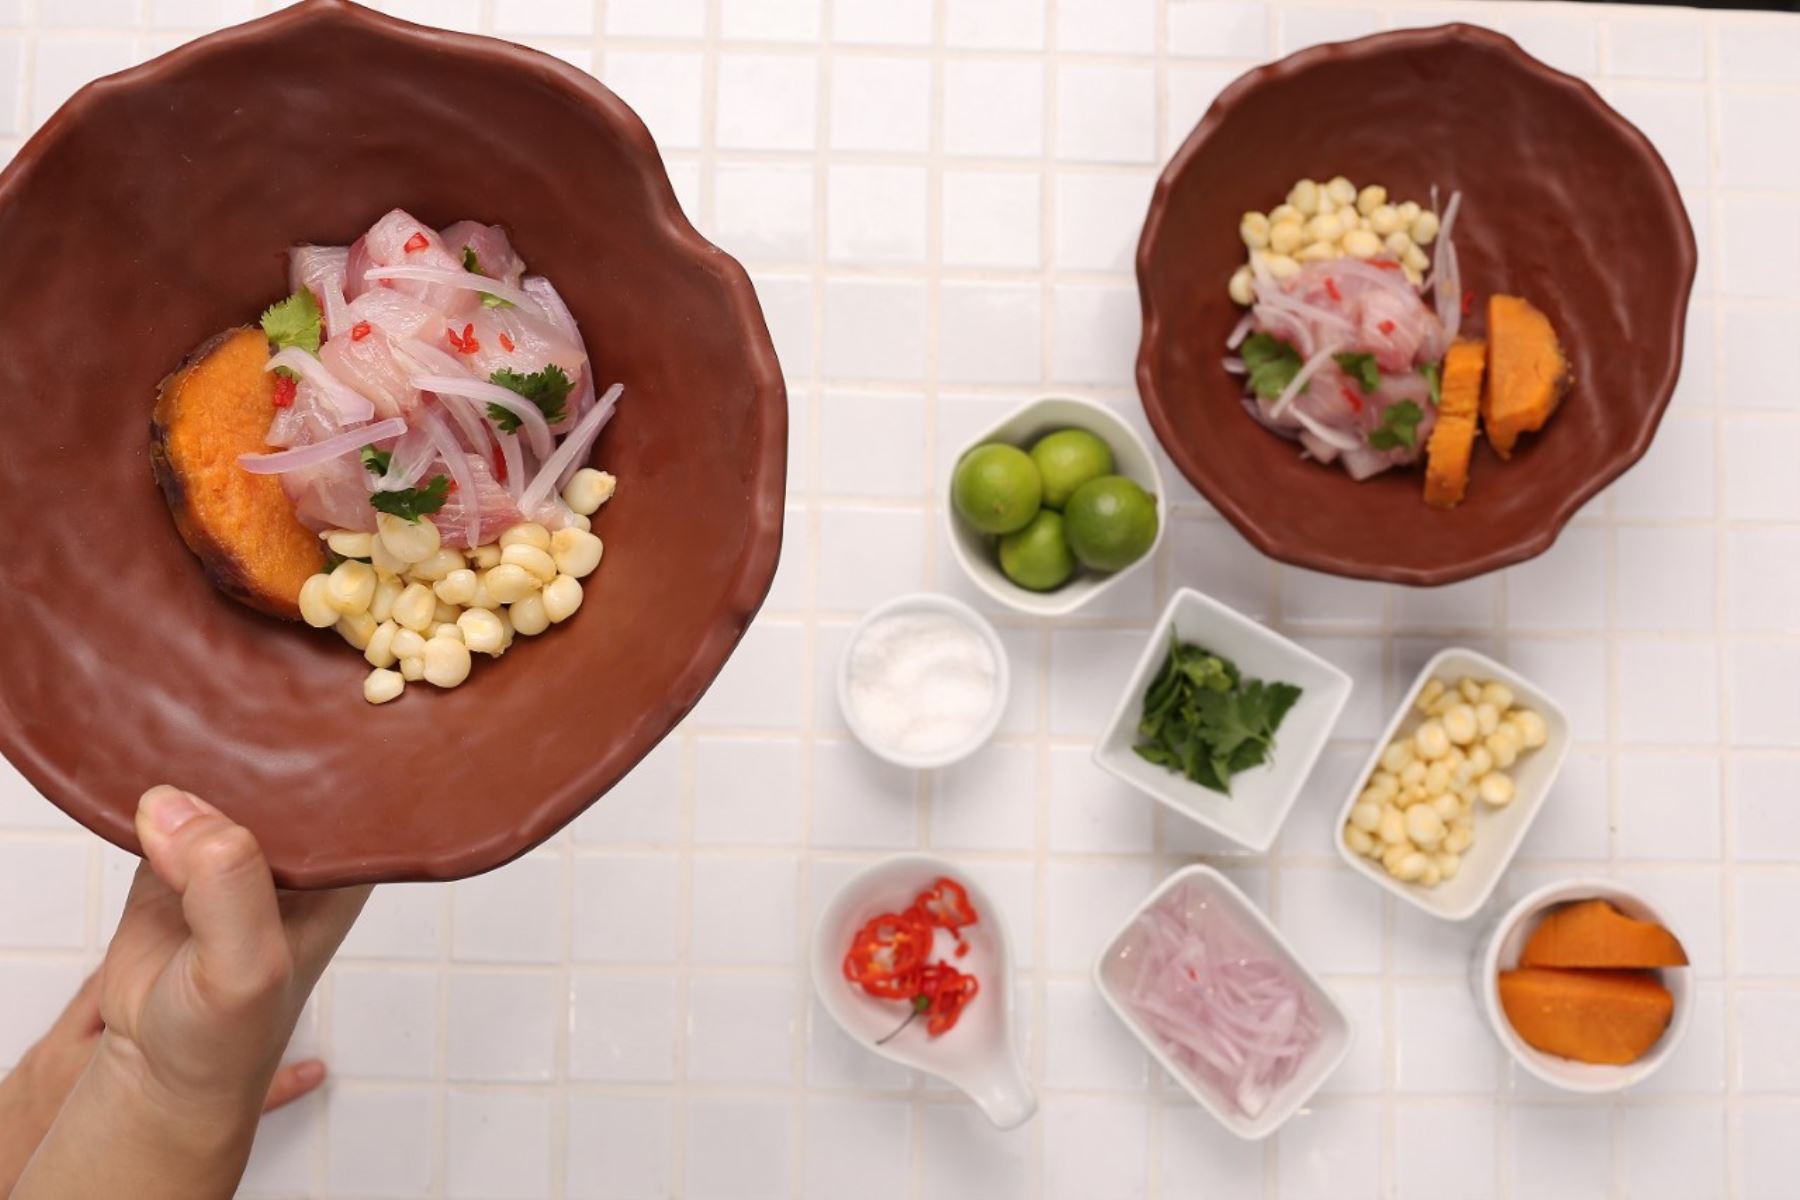 El cebiche es el plato típico embajador de la gastronomía peruana y tiene como insumo protagónico al ají limo, cultivado desde tiempos precolombinos y que le confiere el aroma y sabor que conquista paladares en el mundo. ANDINA/Difusión